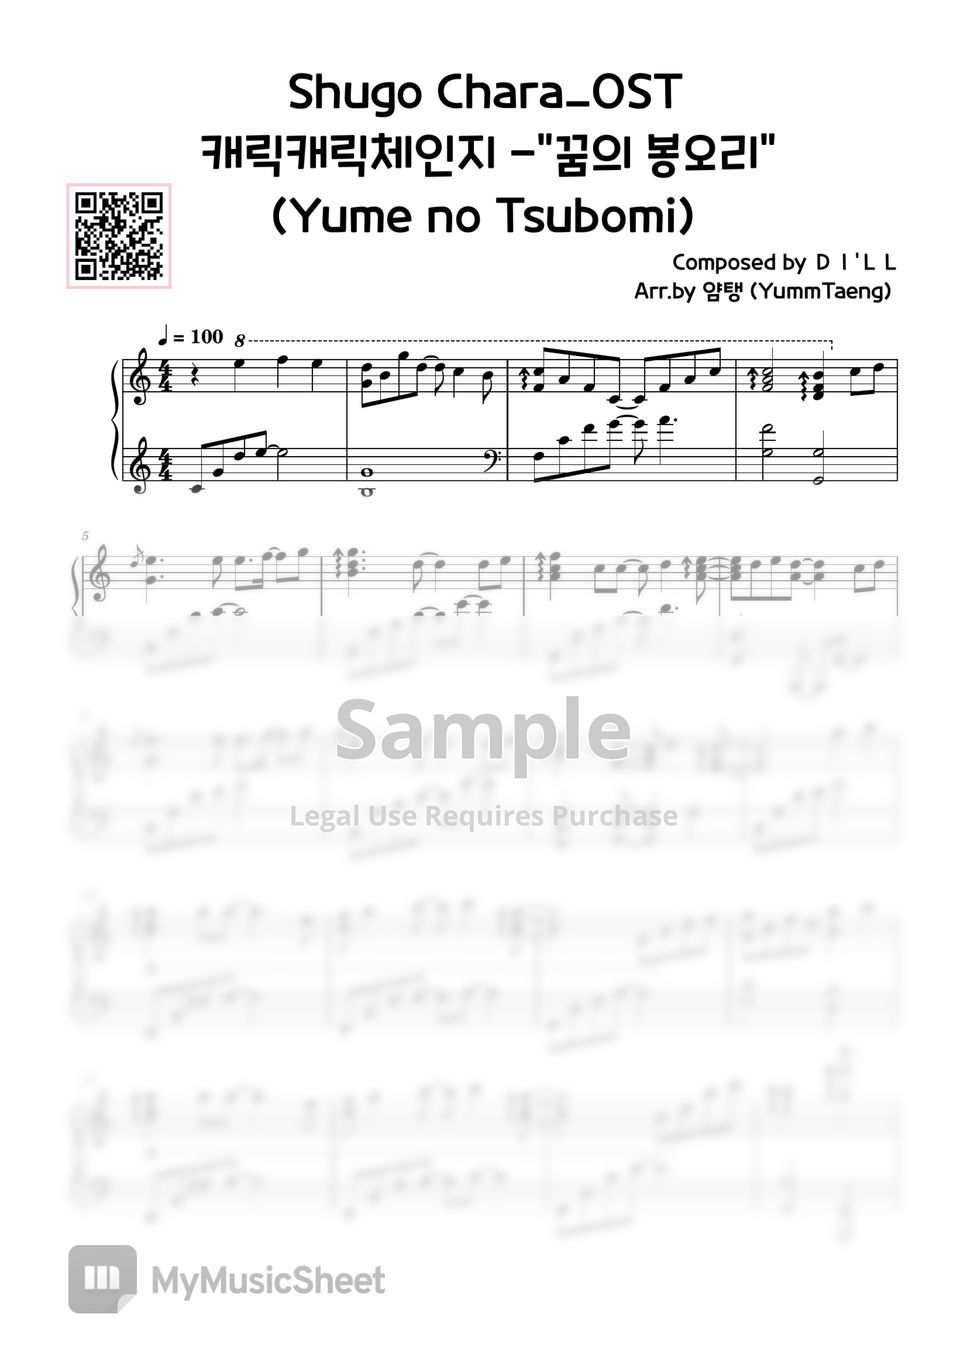 Shugo Chara! hoshina utau - Yume no Tsubomi by YummTaeng